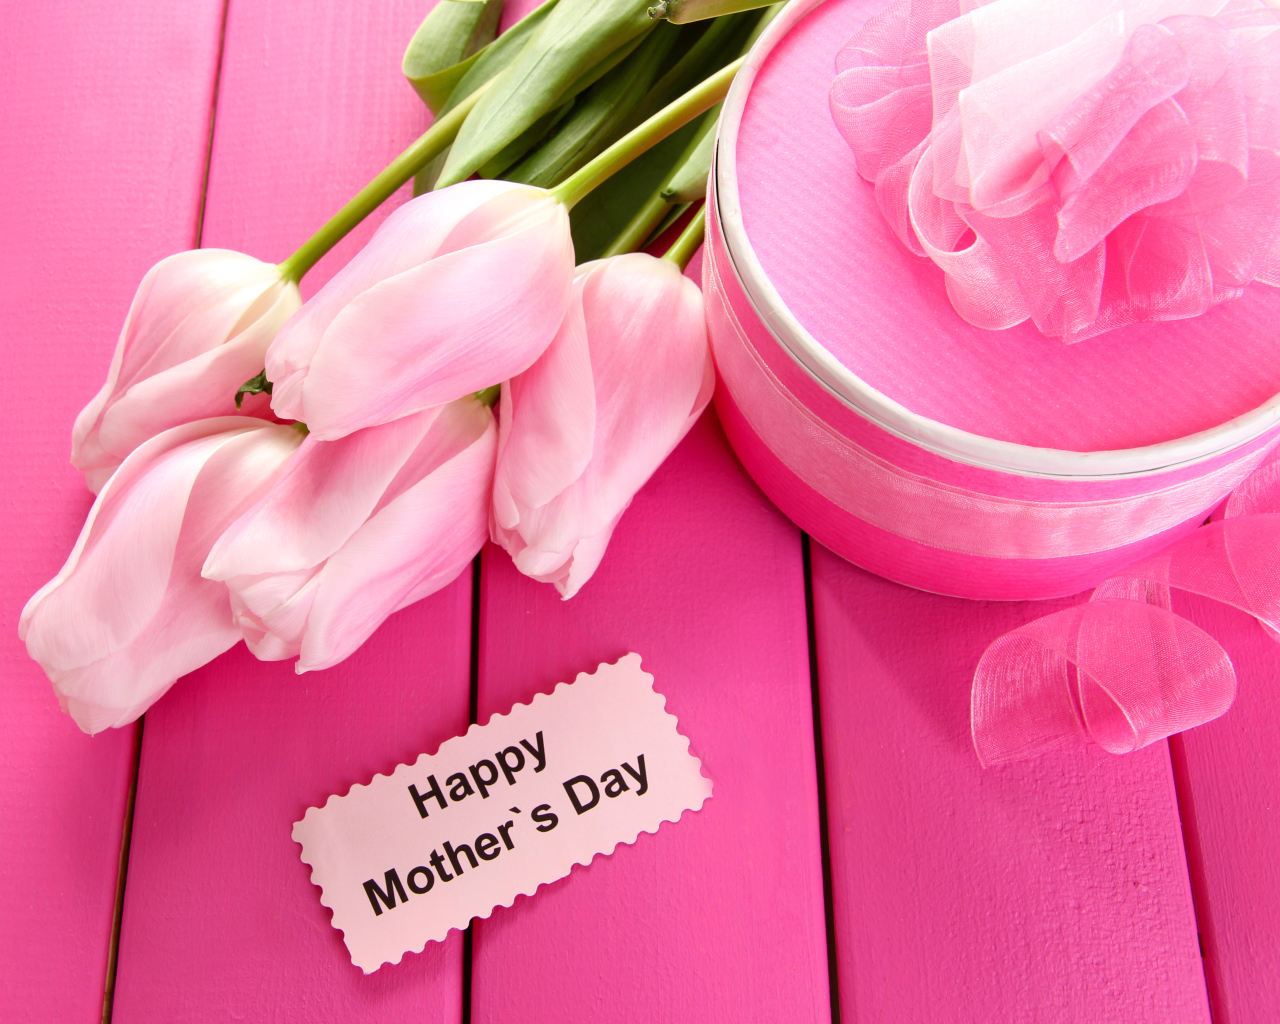 Красивые розовые тюльпаны с подарком и цветами на международный женский день 8 марта